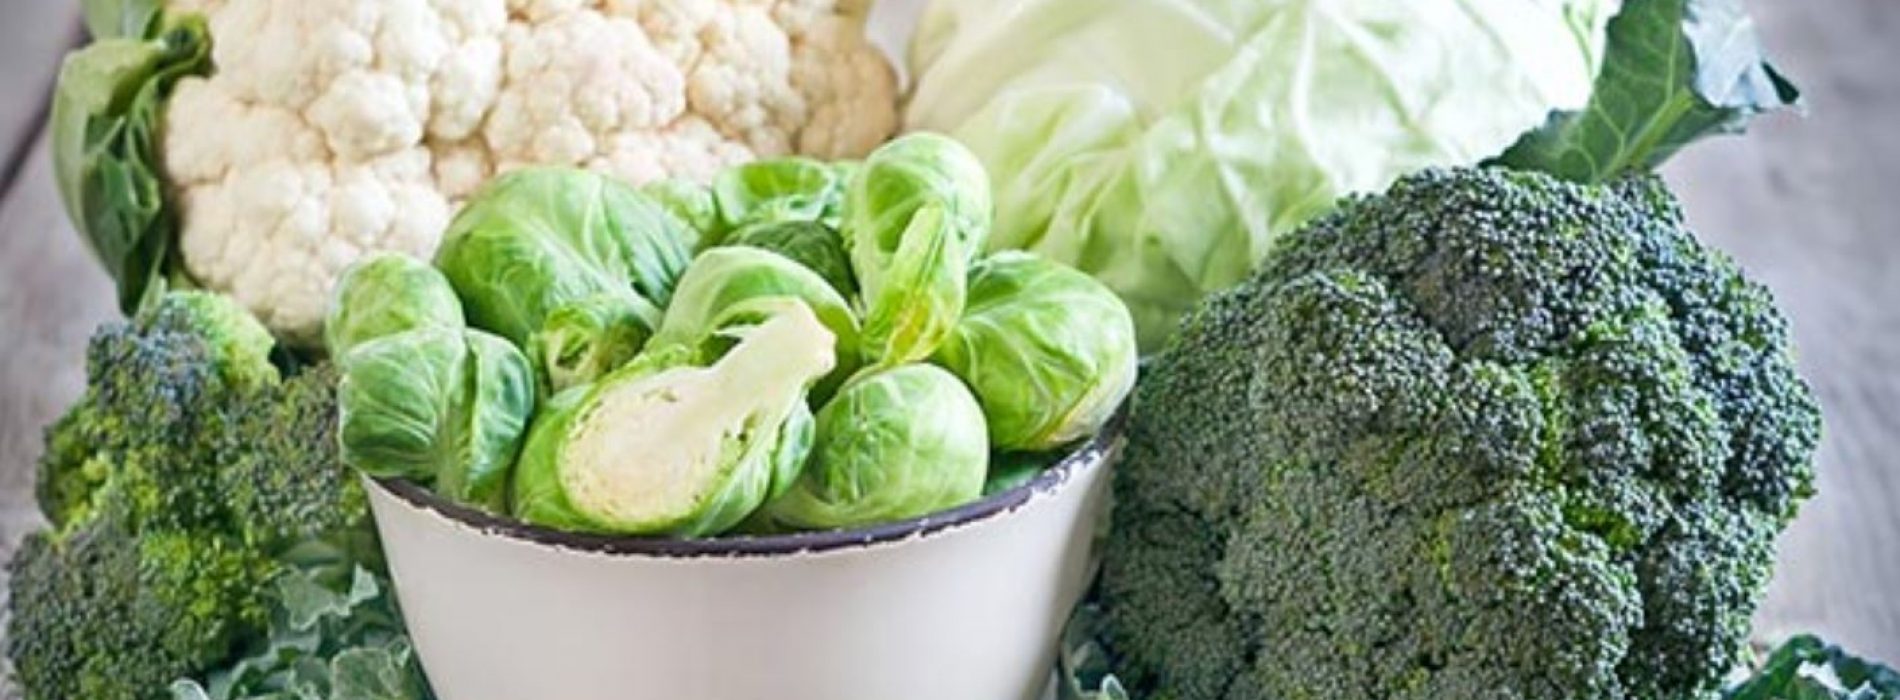 De natuurlijke samenstelling in groenten helpt leverziekte te bestrijden